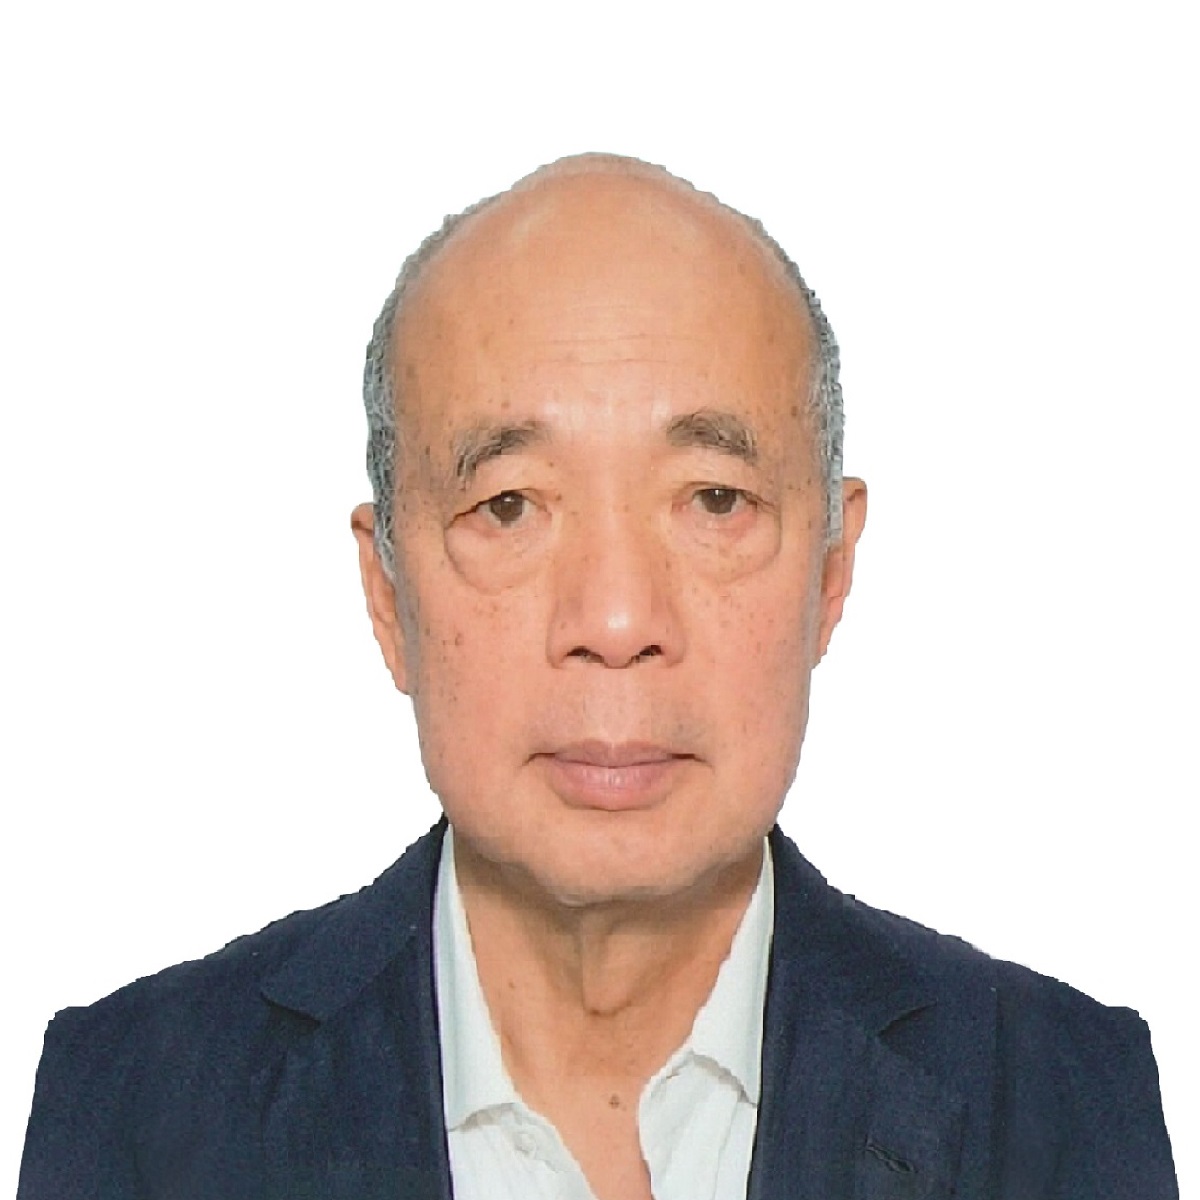 Mr James C. Ng